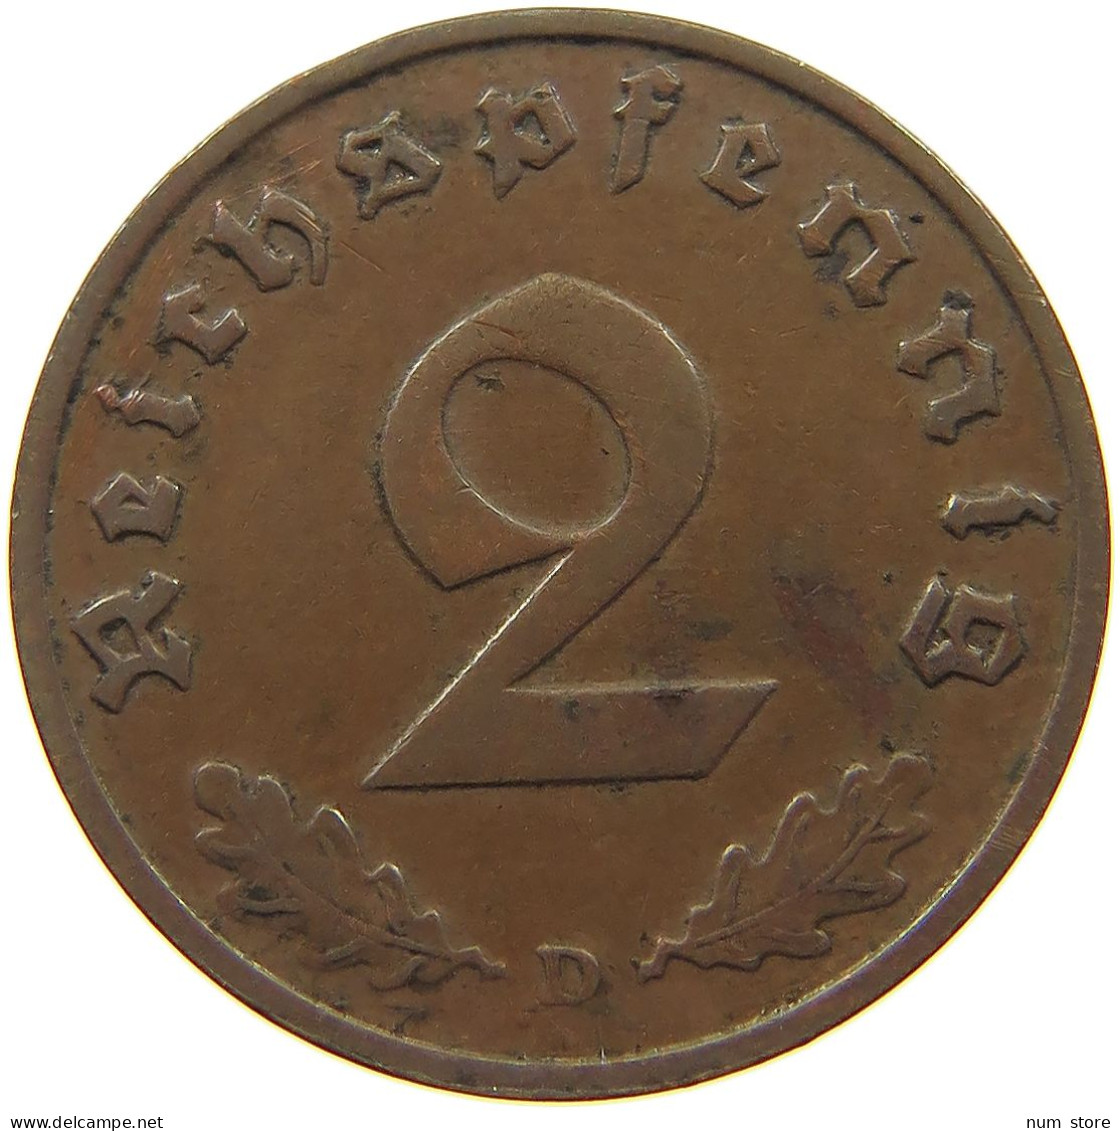 GERMANY 2 PFENNIG 1938 D #c081 0303 - 2 Reichspfennig